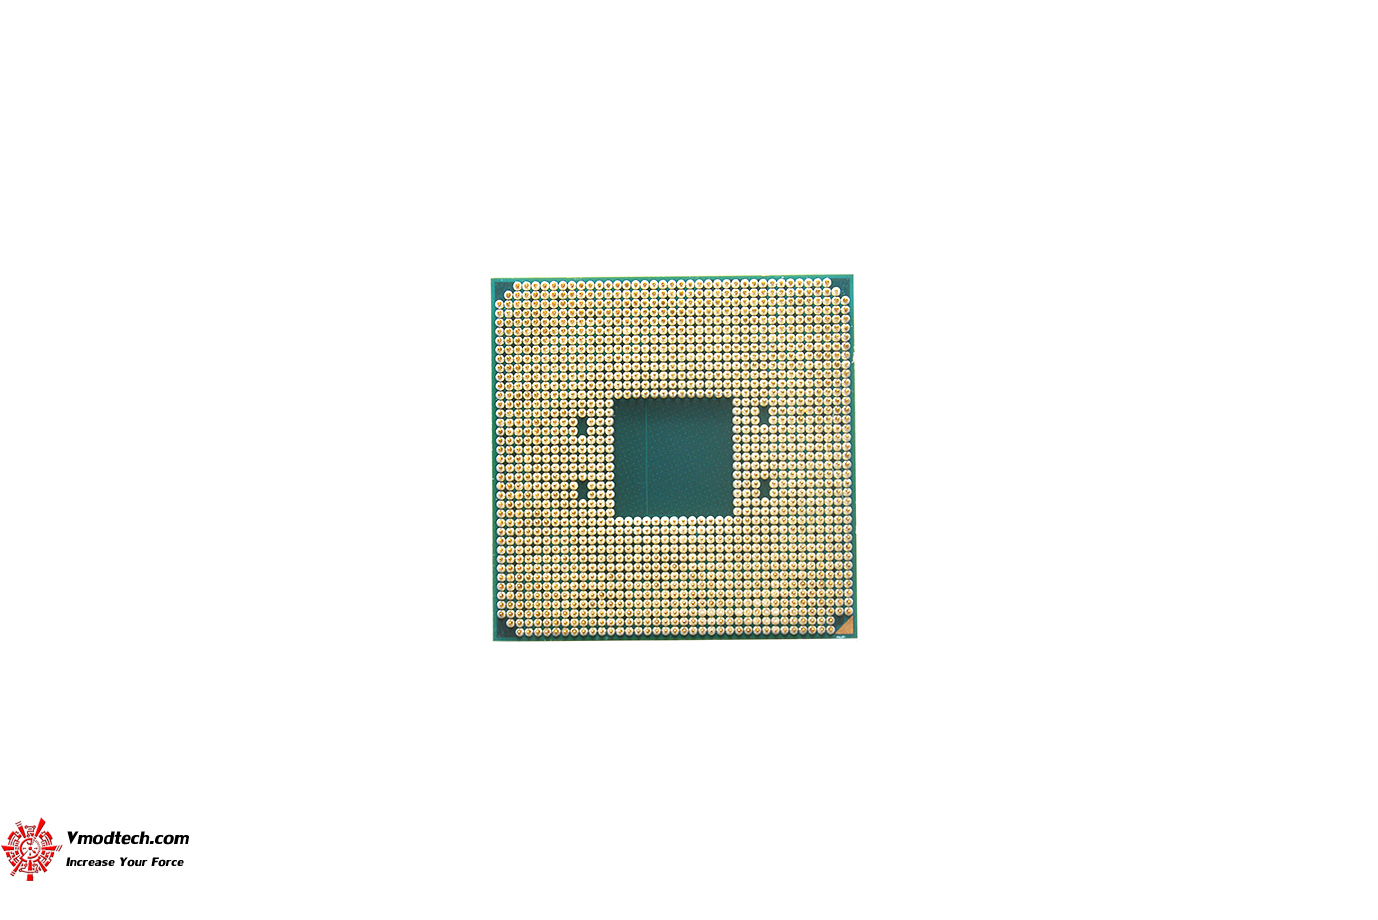 dsc 9921 AMD RYZEN 9 5950X PROCESSOR REVIEW